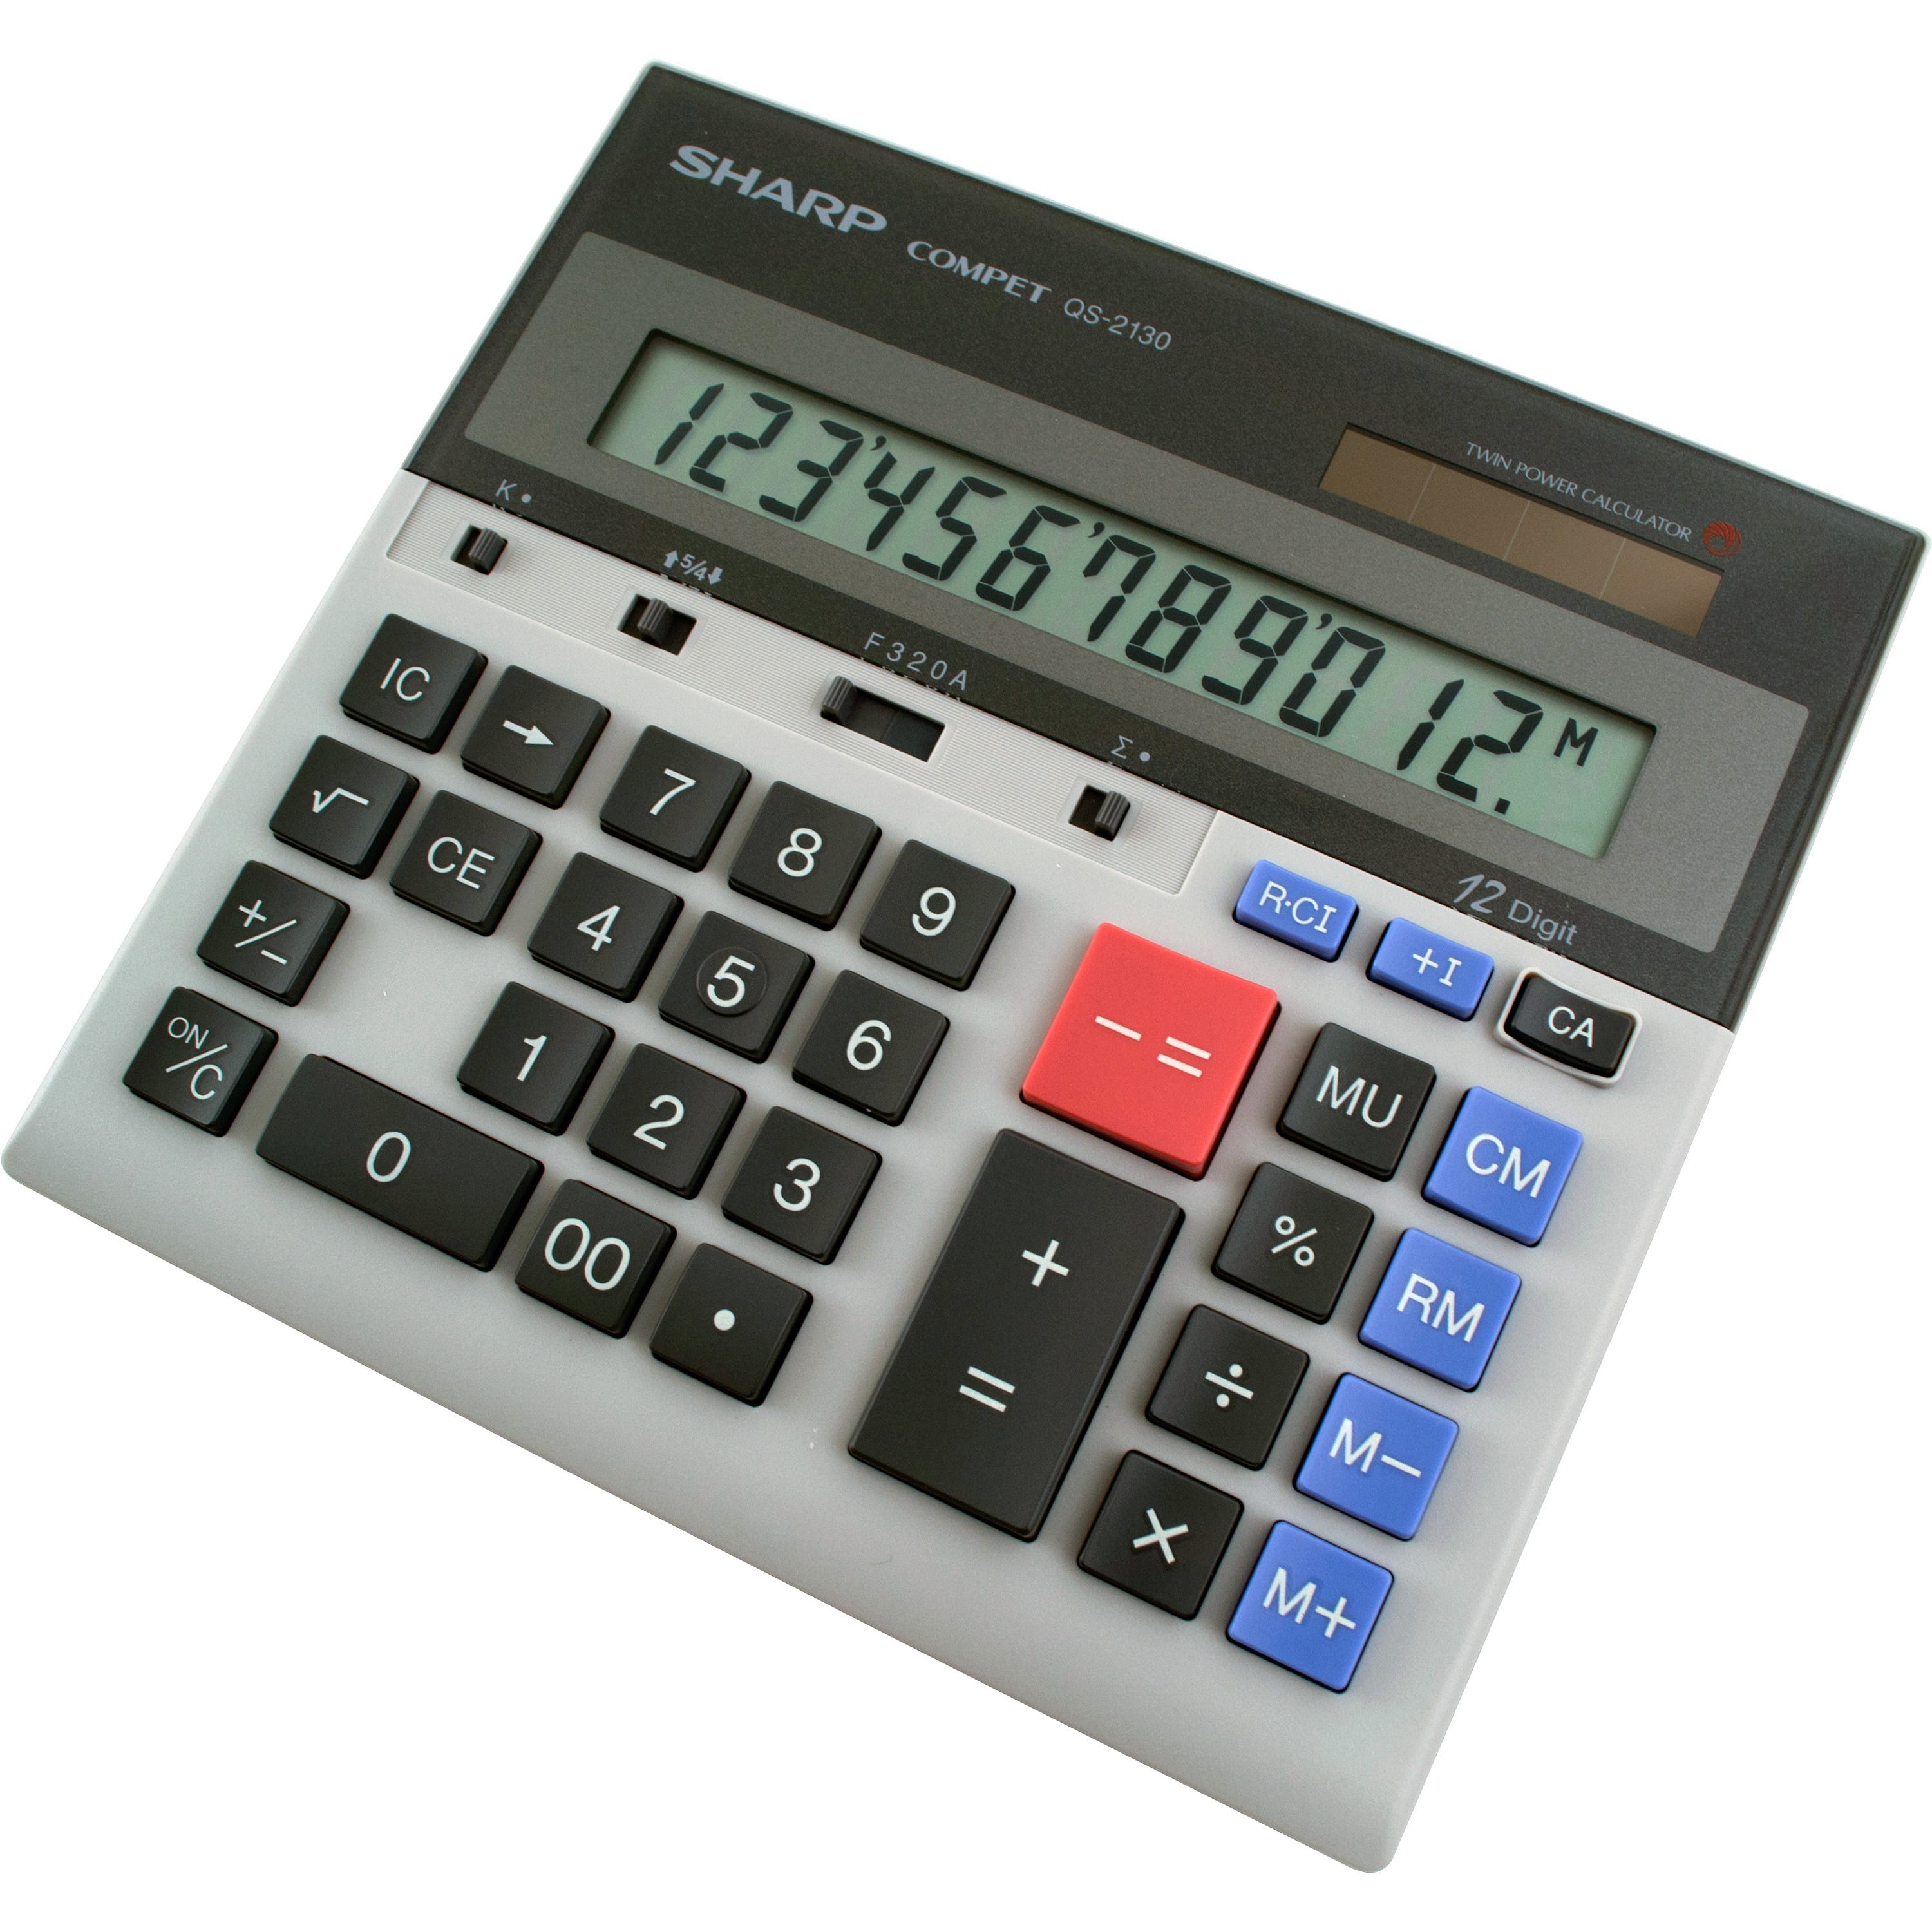 sharp-calculators-qs-2130-12-digit-commercial-desktop-calculator-gray-1-each-quantity